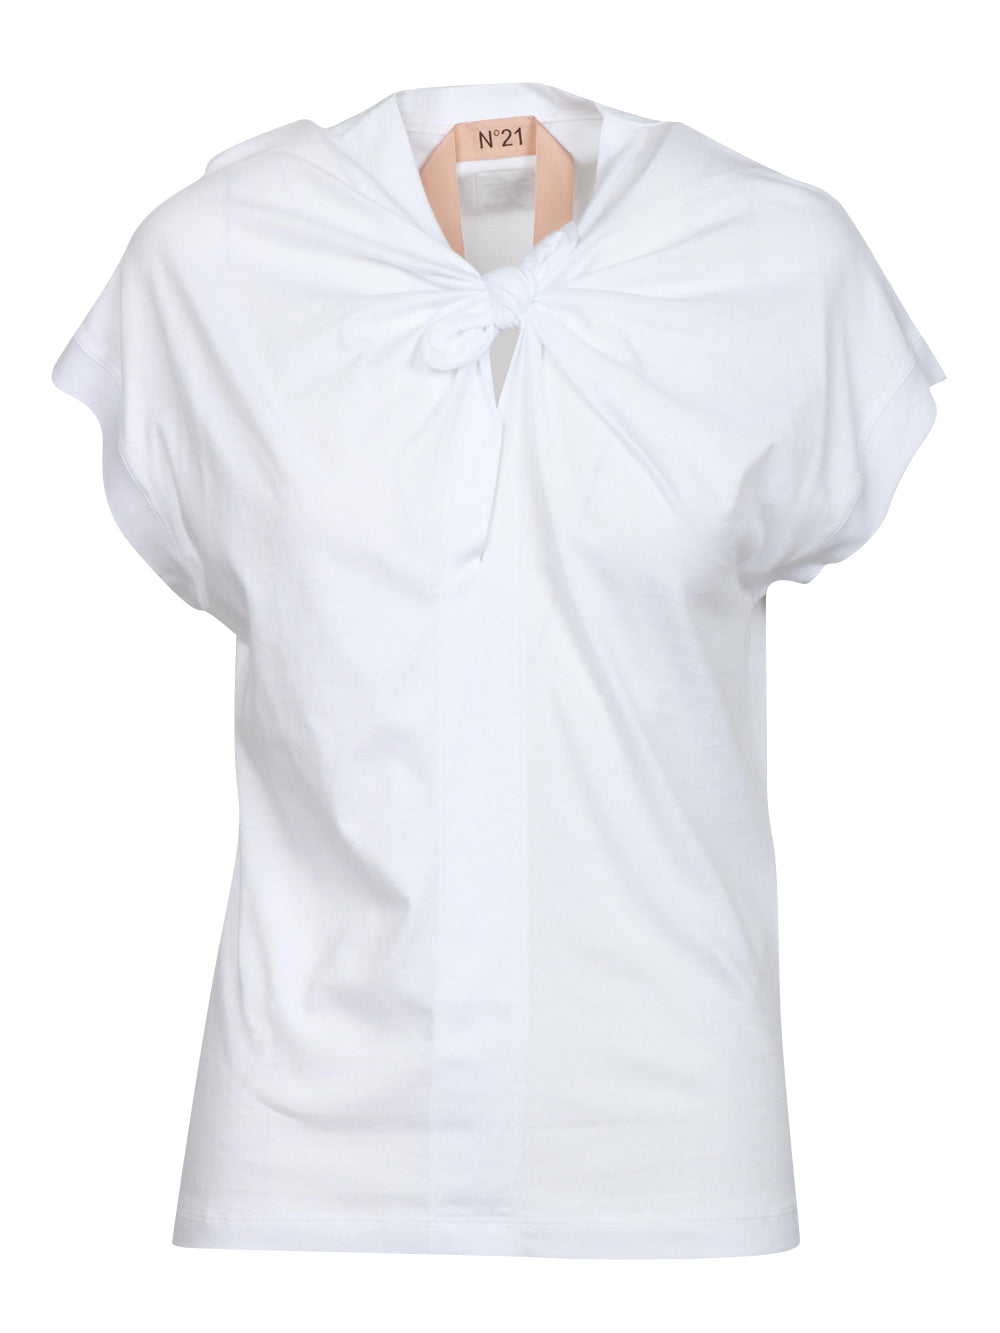 N°21 T-Shirt Girocollo Bianca con Nodo Bianco